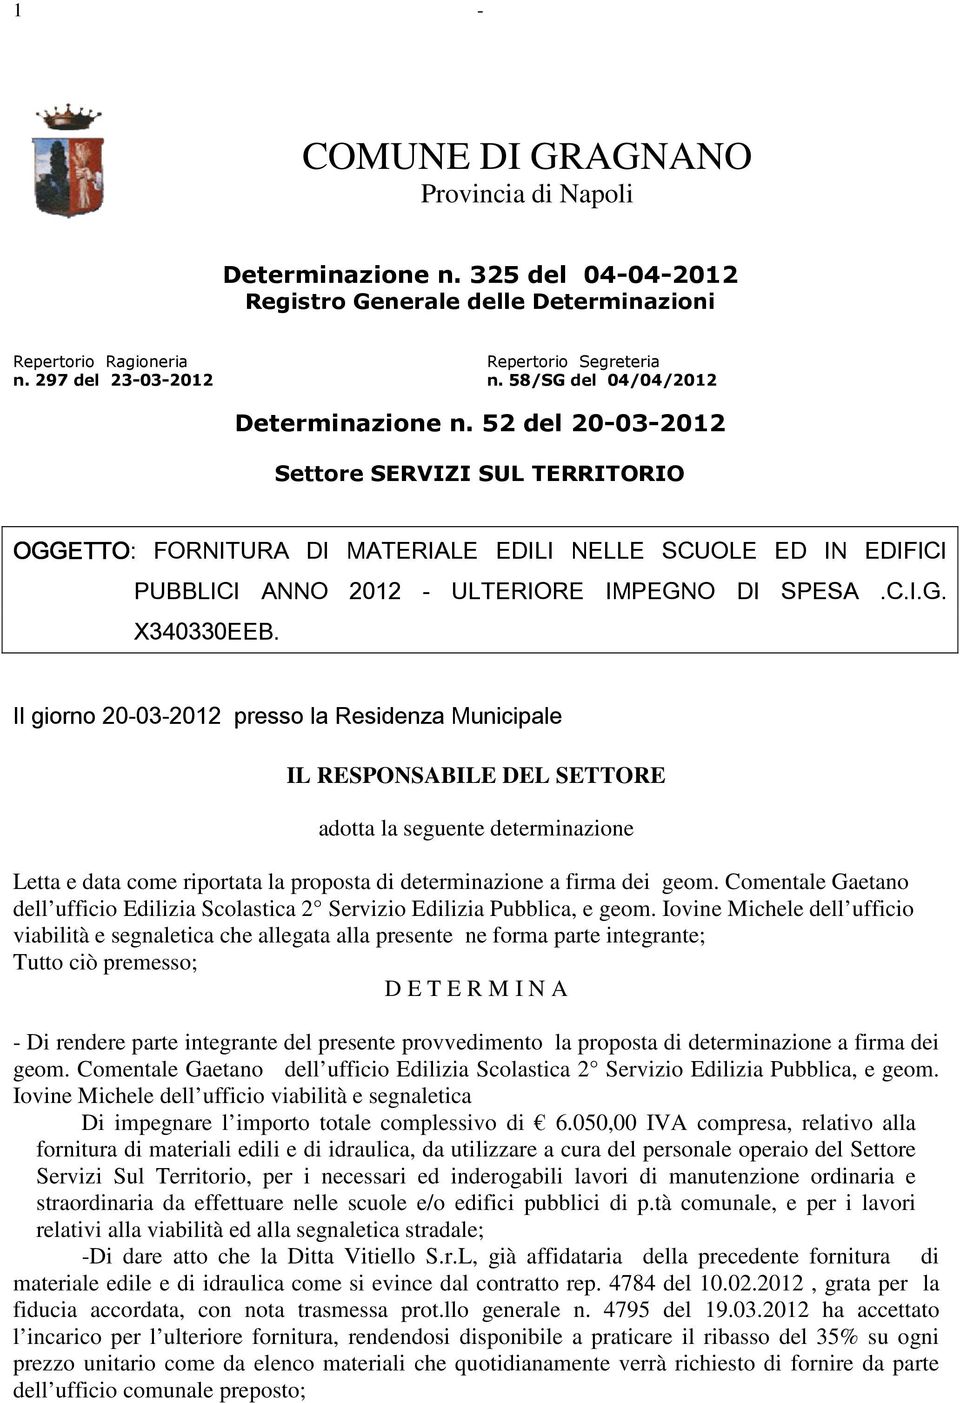 52 del 20-03-2012 Settore SERVIZI SUL TERRITORIO OGGETTO: FORNITURA DI MATERIALE EDILI NELLE SCUOLE ED IN EDIFICI PUBBLICI ANNO 2012 - ULTERIORE IMPEGNO DI SPESA.C.I.G. X340330EEB.